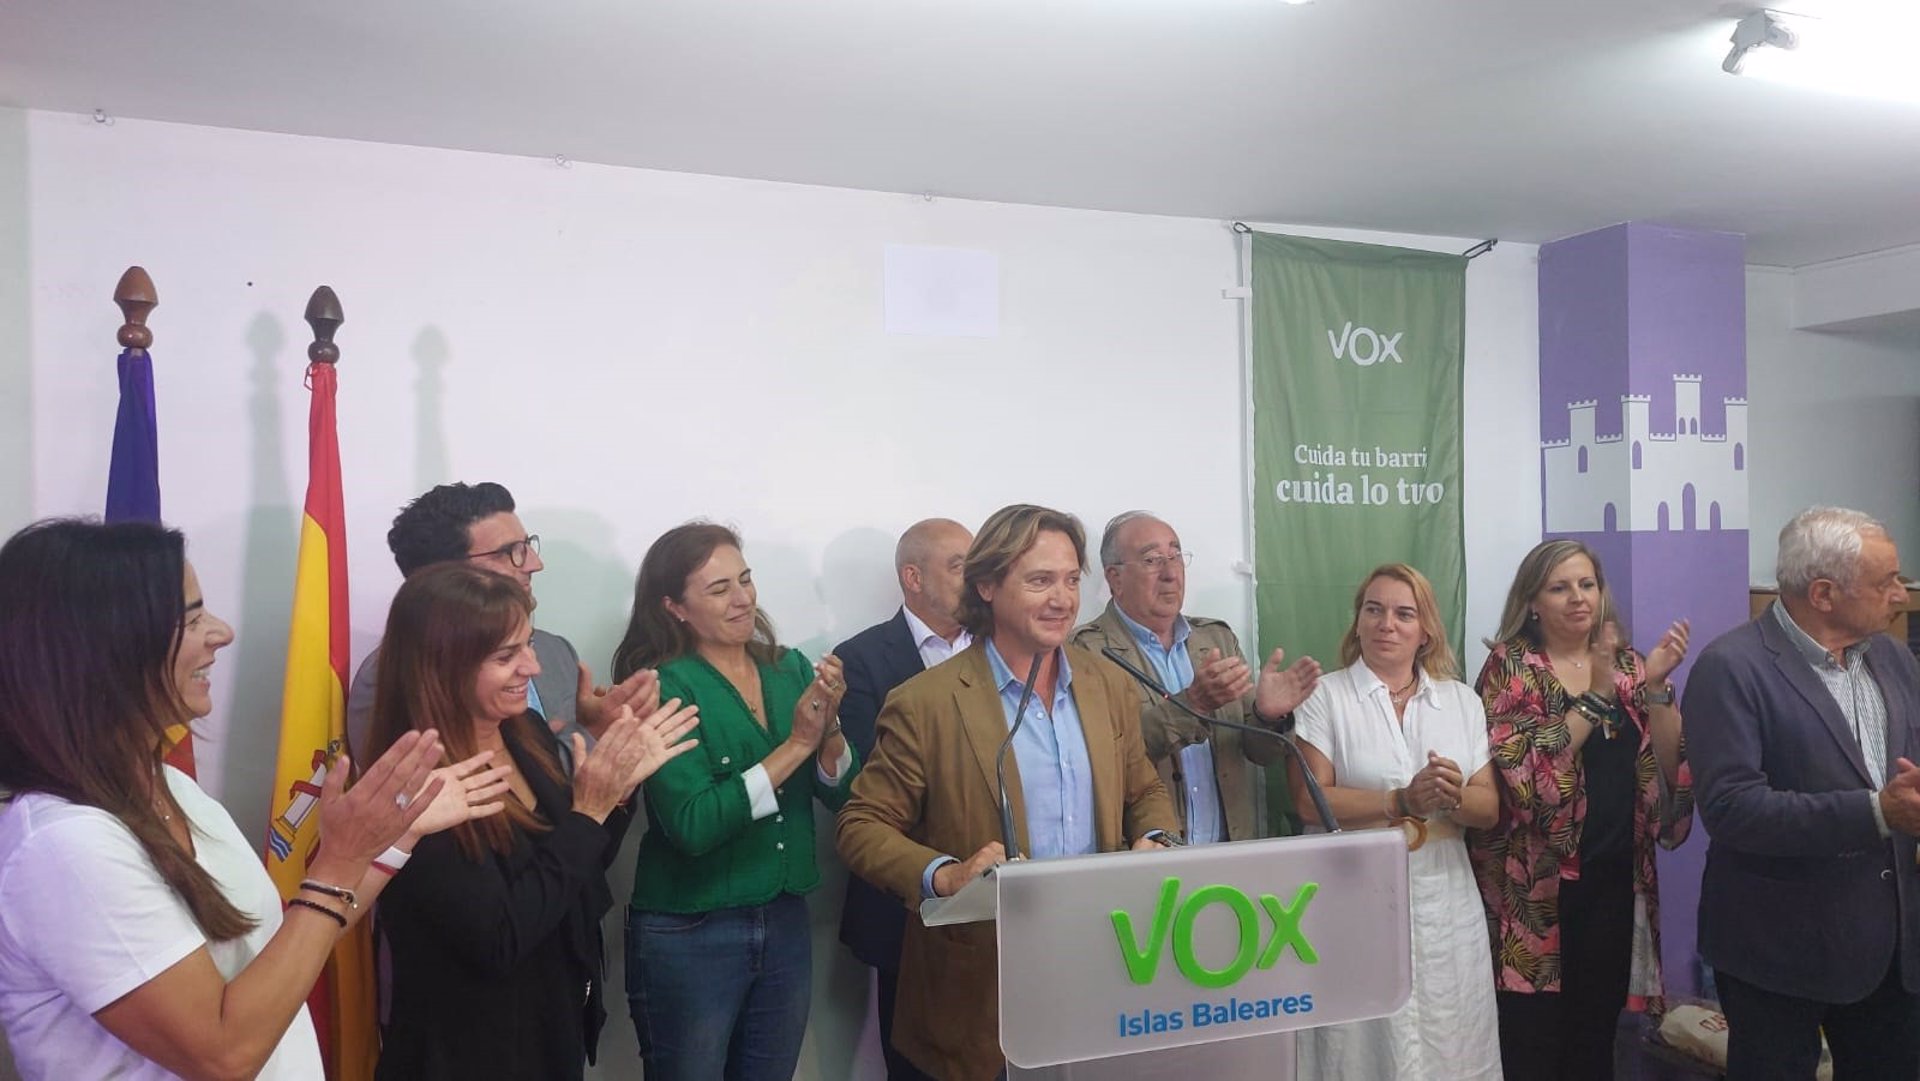 El candidato de Vox al Govern, Jorge Campos, comparece en la sede del partido en Palma tras los resultados del 28M. ESPAÑA EUROPA ISLAS BALEARES POLÍTICA